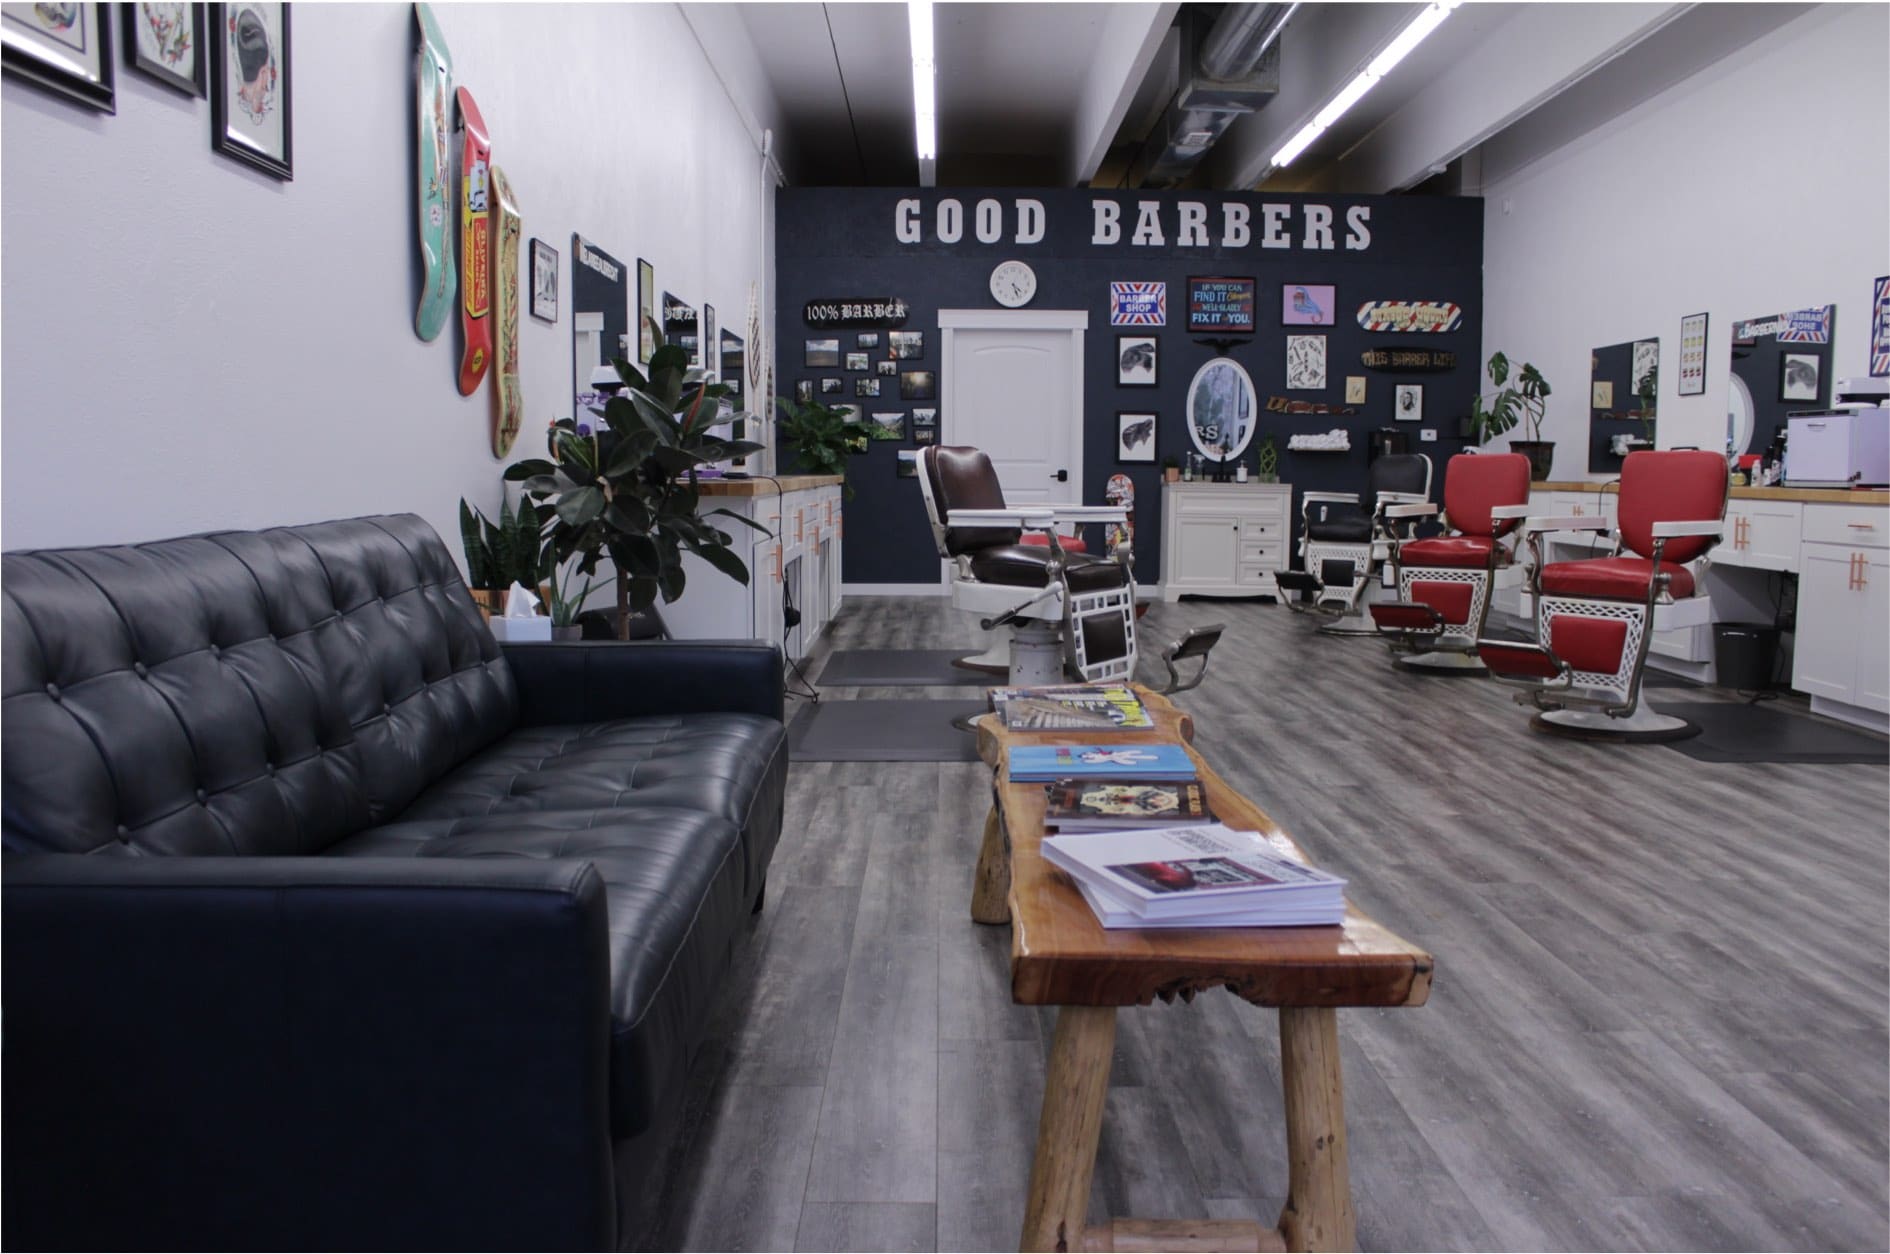 Best Barbershop in Boulder Colorado - Good Barbers